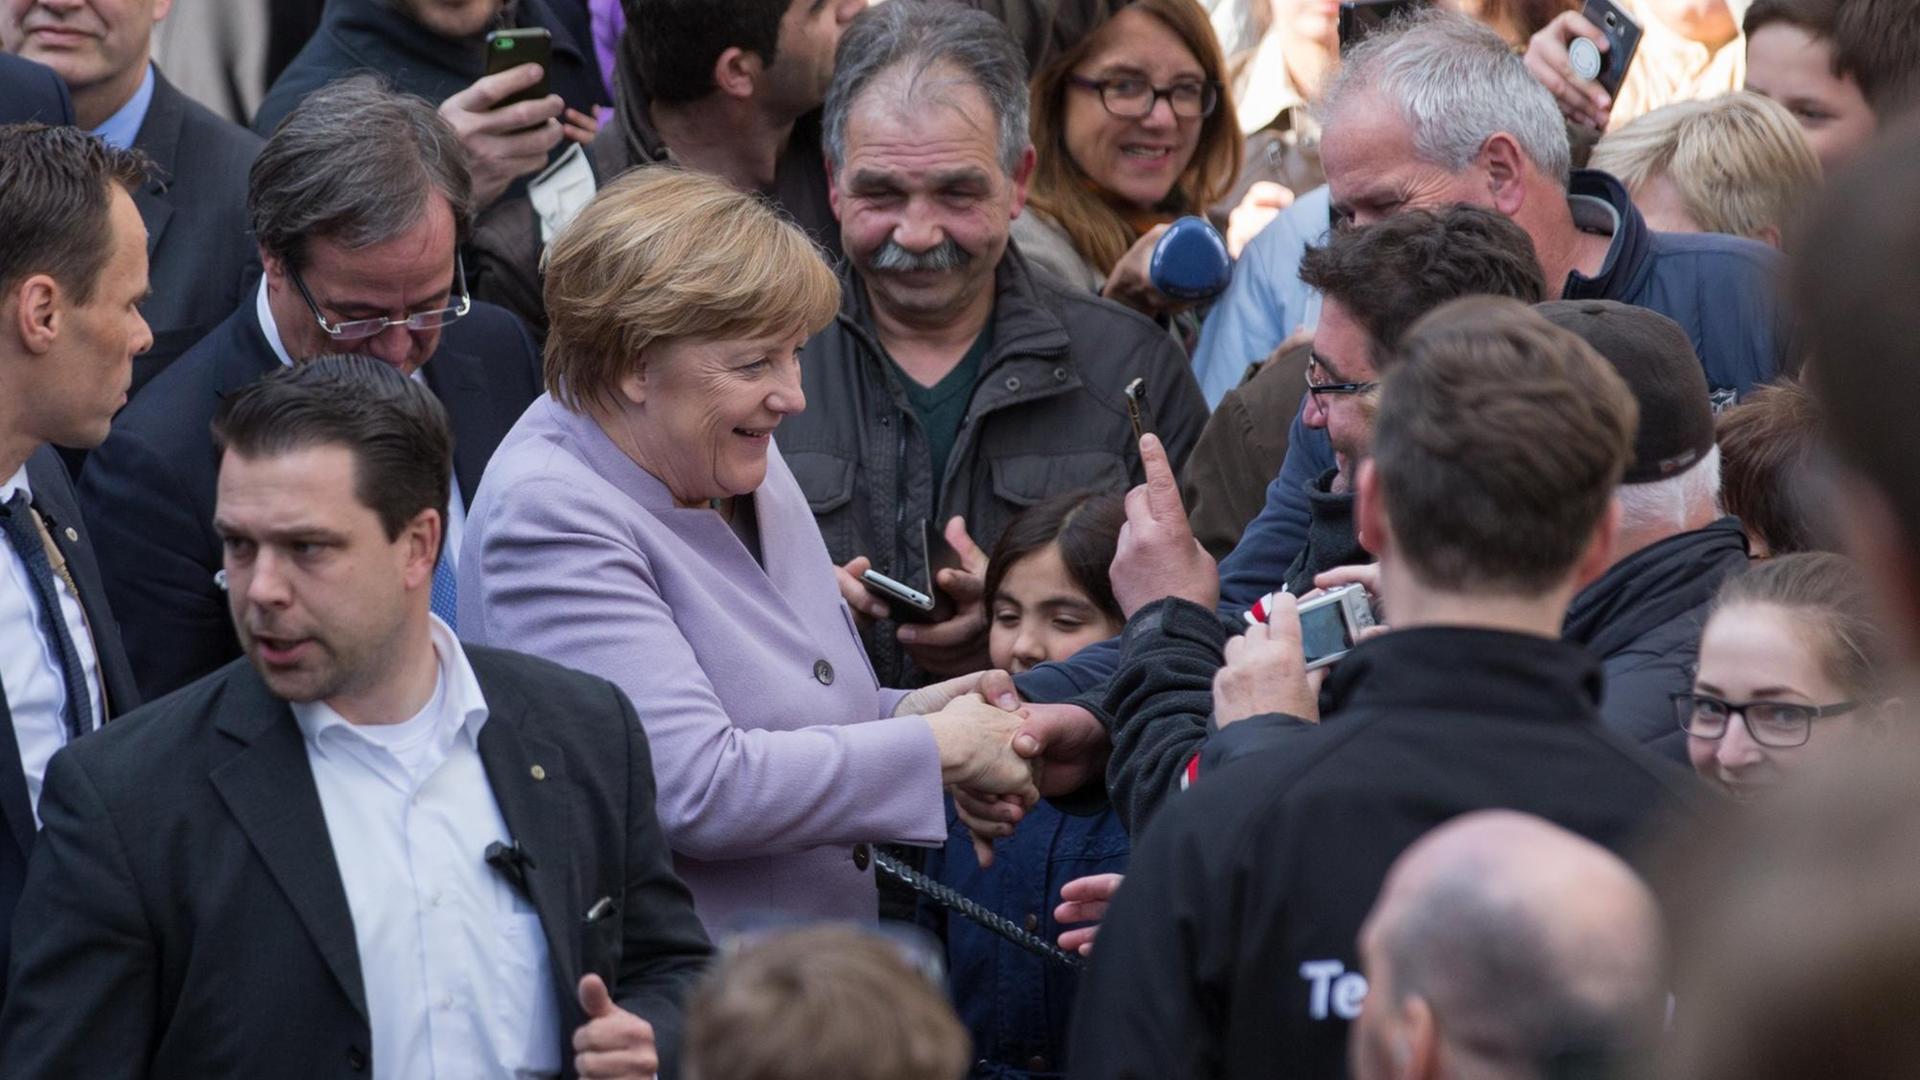 Bundeskanzlerin Angela Merkel (CDU) kommt am 27.04.2017 in Beverungen (Nordrhein-Westfalen) zu einer Wahlkampf-Veranstaltung zur NRW-Landtagswahl. Merkel unterstützt den CDU-NRW-Spitzenkandidaten Laschet.